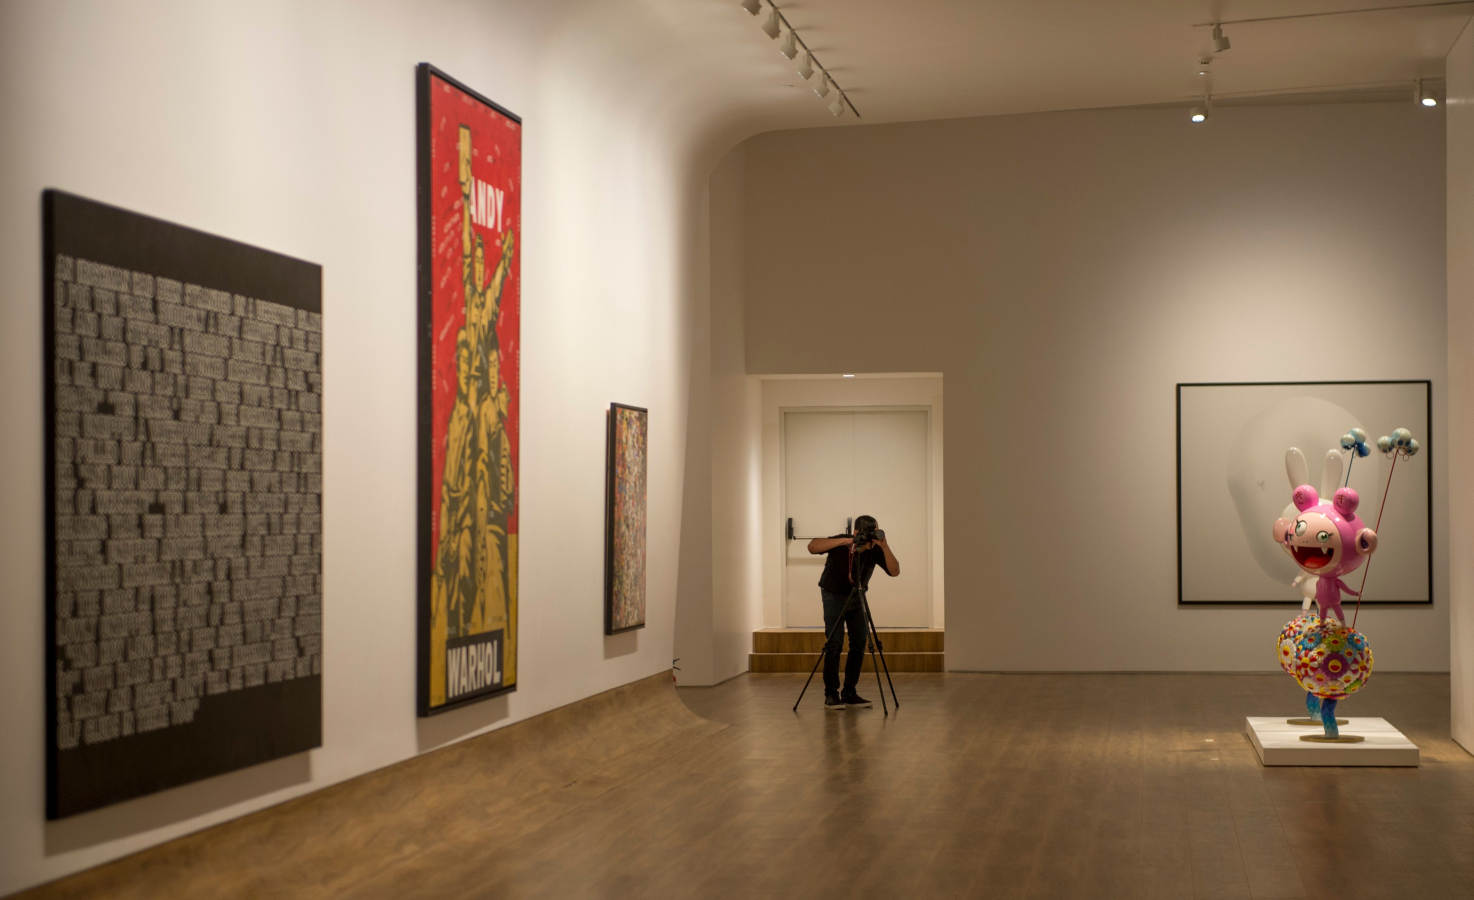 La primera galería internacional de arte contemporáneo de Indonesia se inaugurará el 4 de noviembre, y reunirá obras de Ai Weiwei, Mark Rothko y maestros indonesios en un espacio moderno.